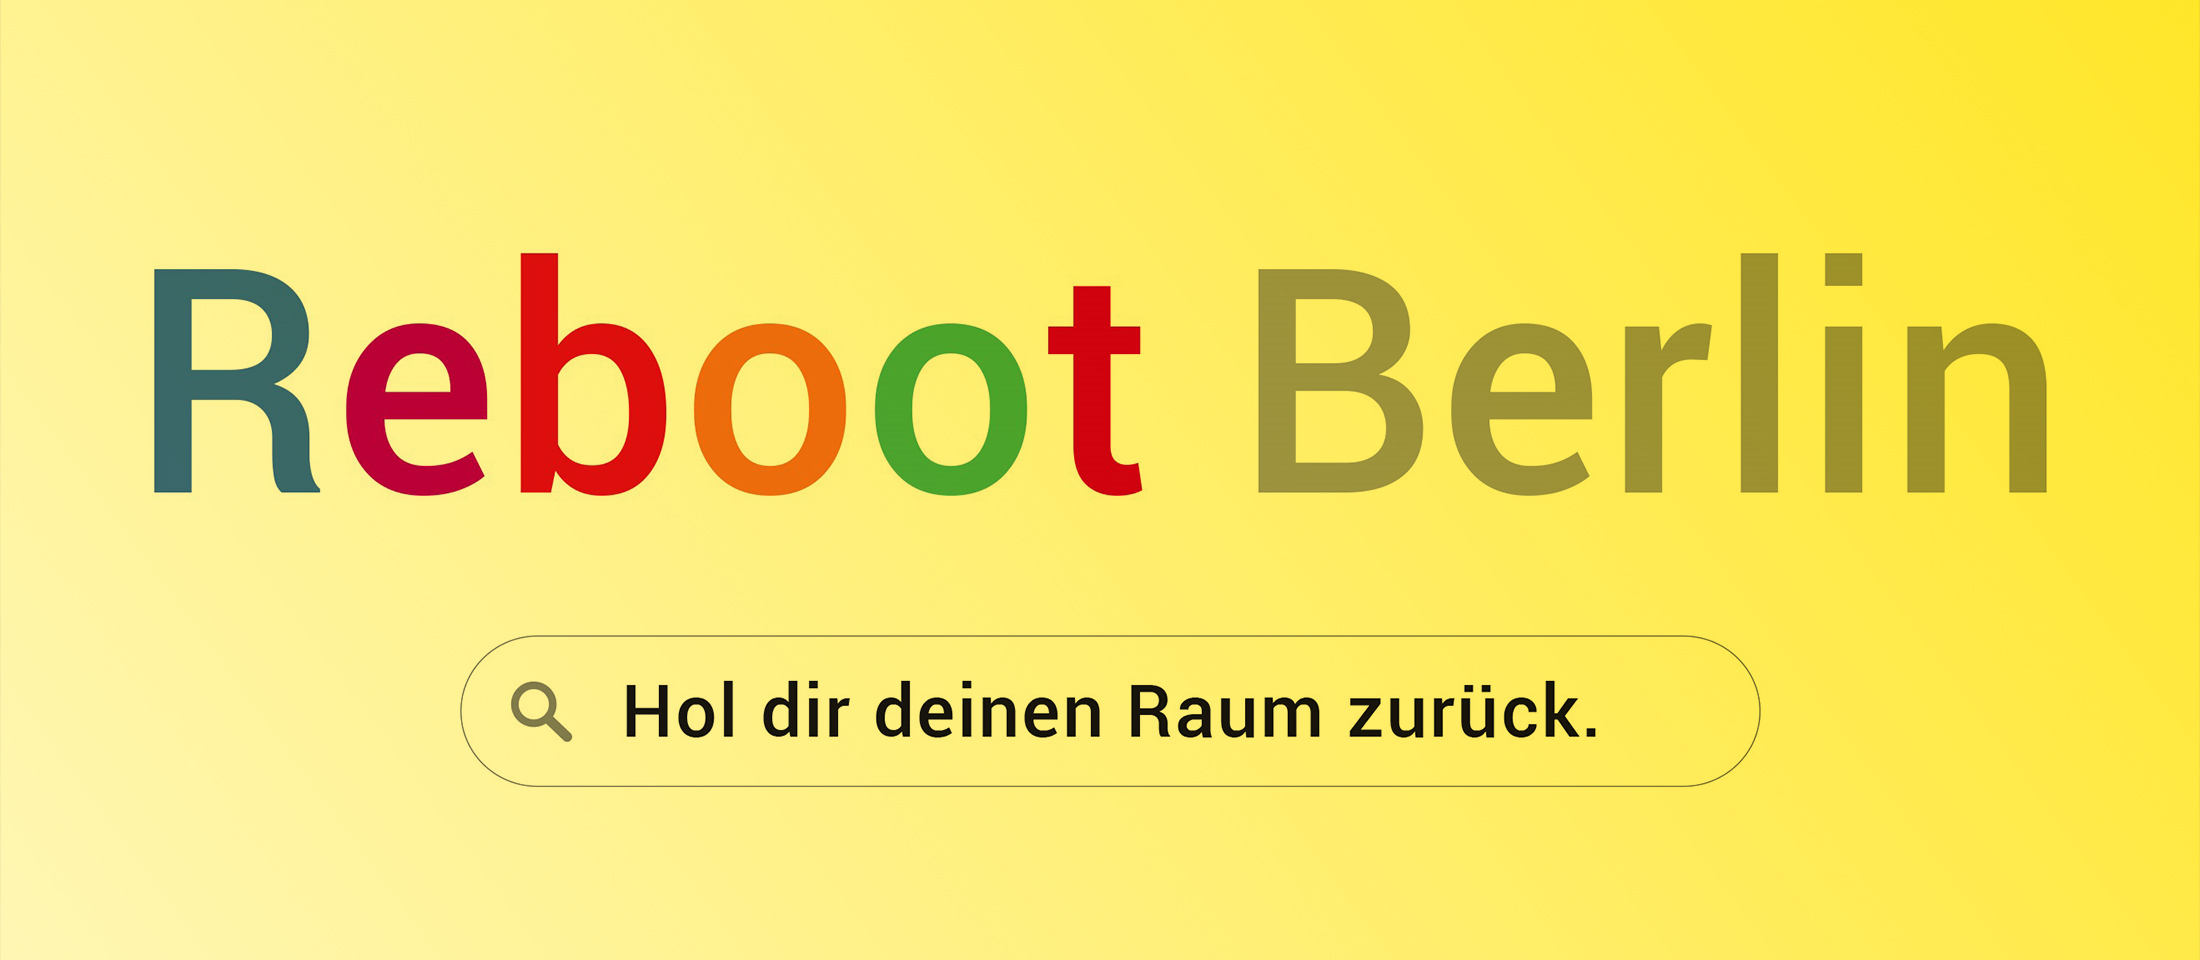 Reboot Berlin